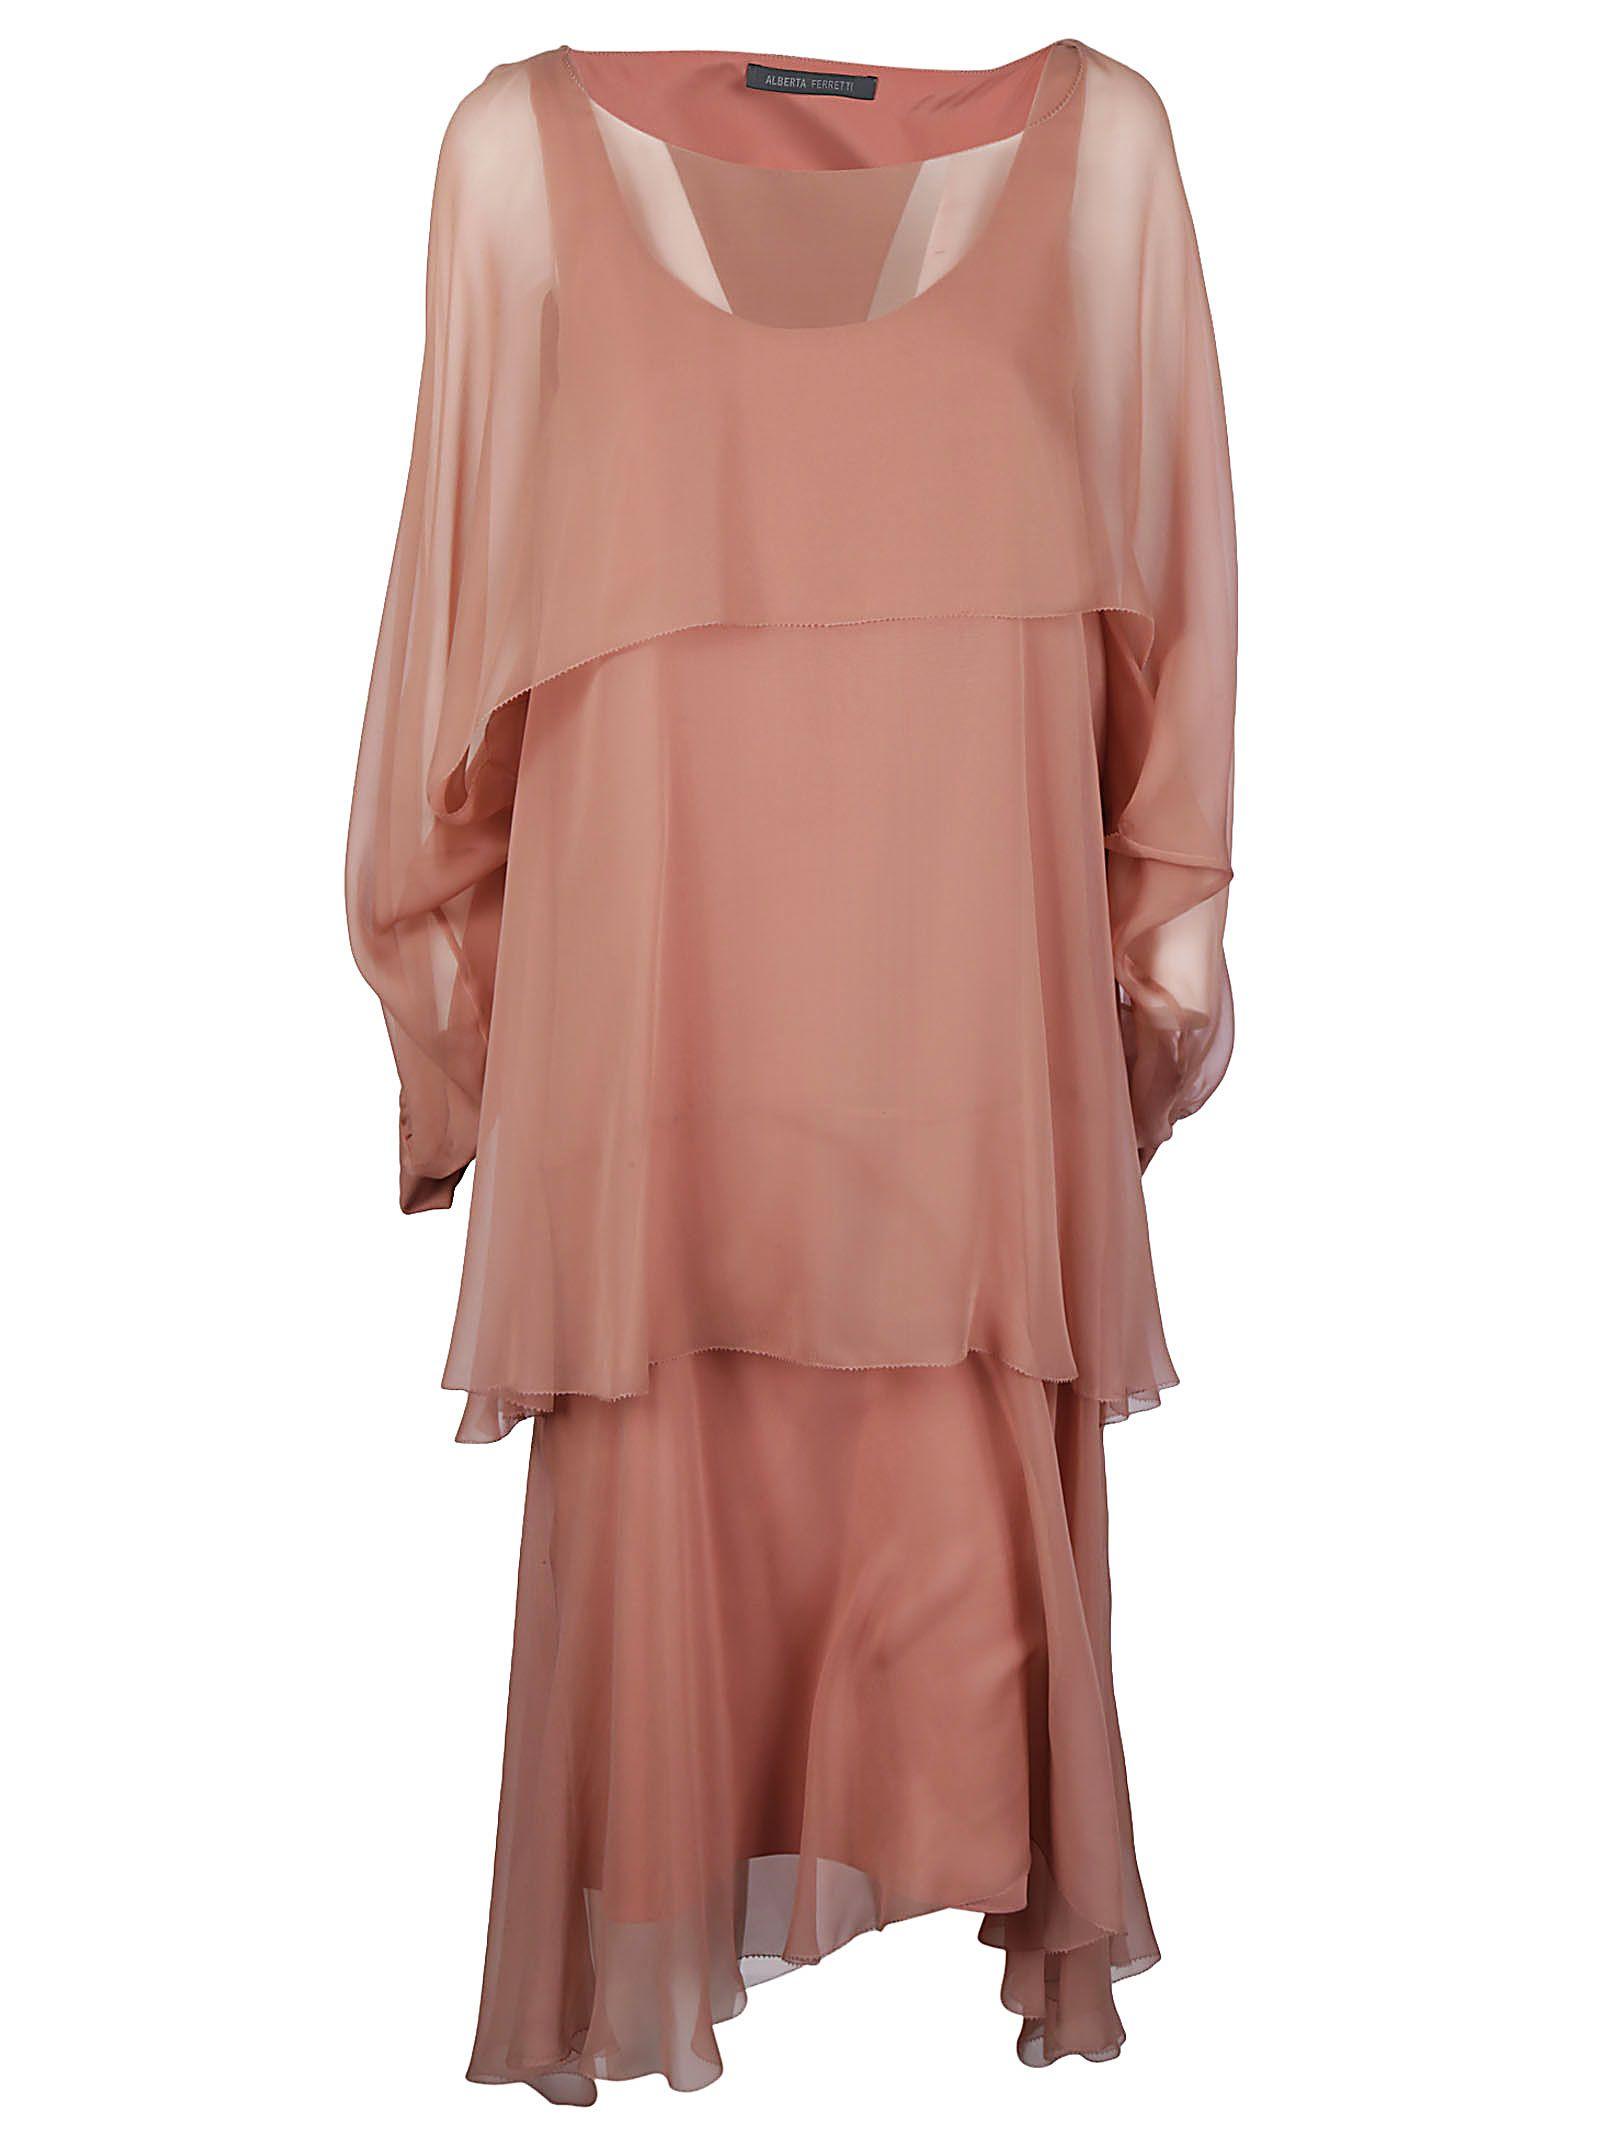 Alberta Ferretti Pink Silk Dress in Pink - Lyst